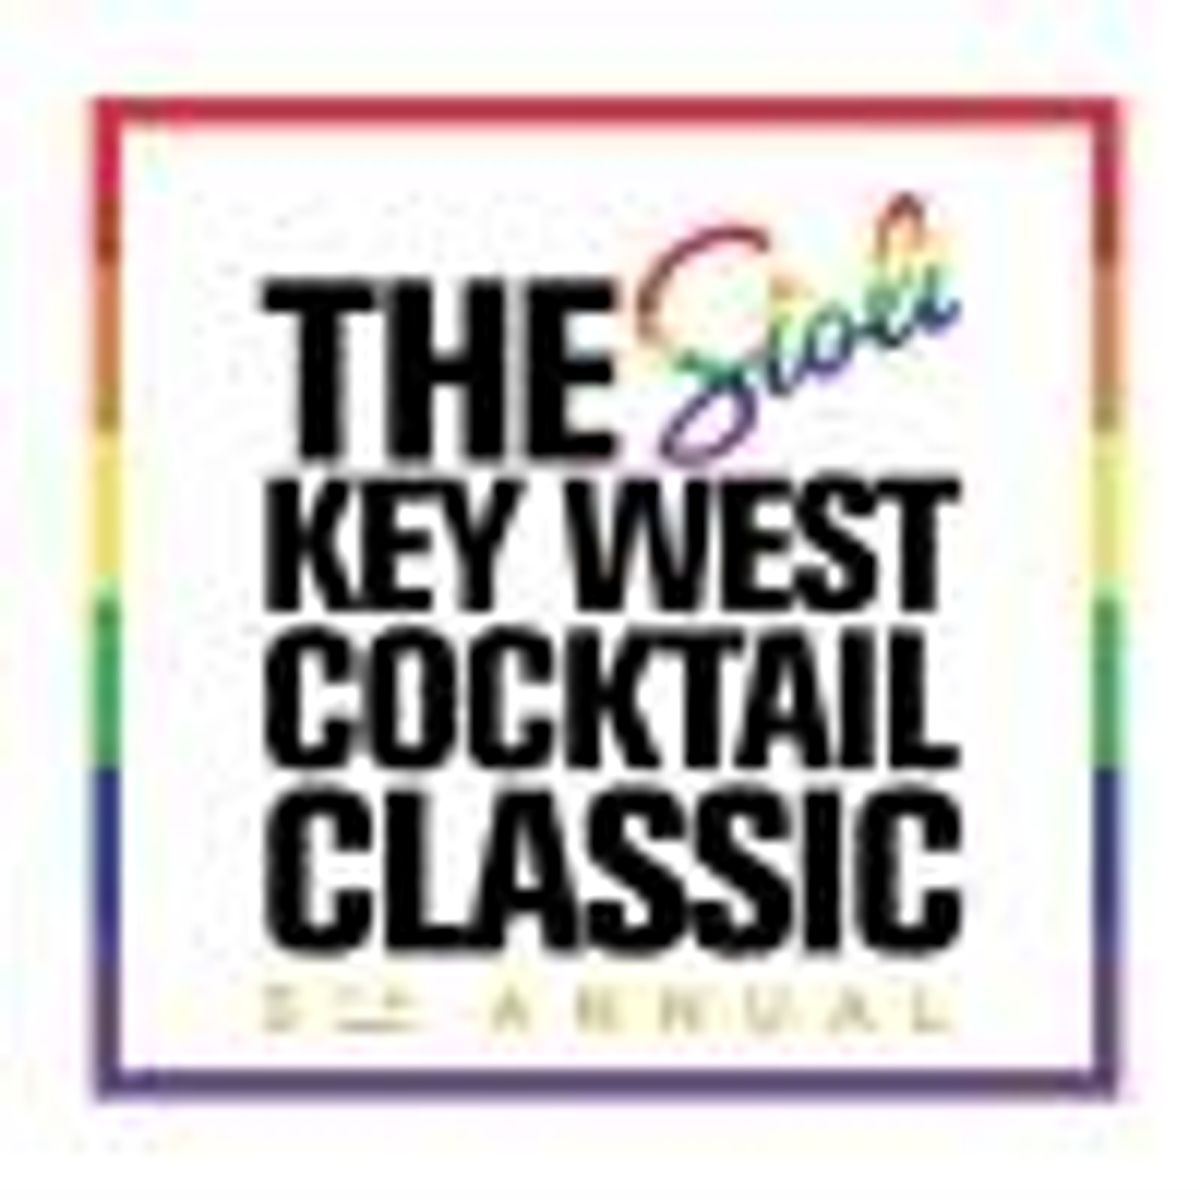 Stoli Key West Cocktail Classic